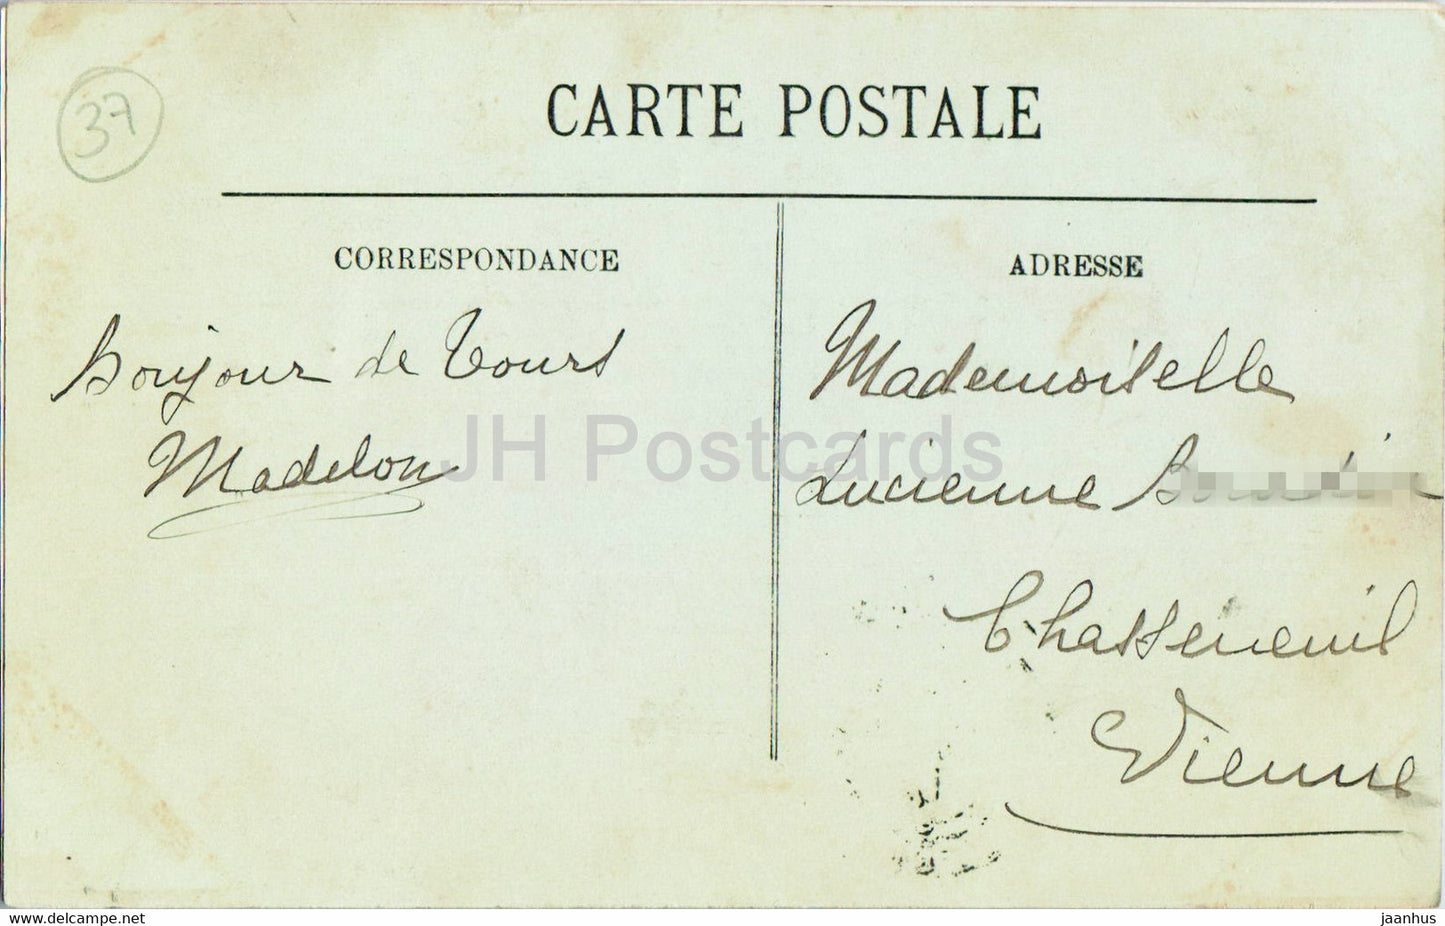 Tours - Le Dôme de la Basilique Saint Martin - La Ville et la Cathédrale - 33 - carte postale ancienne - 1912 - France - occasion